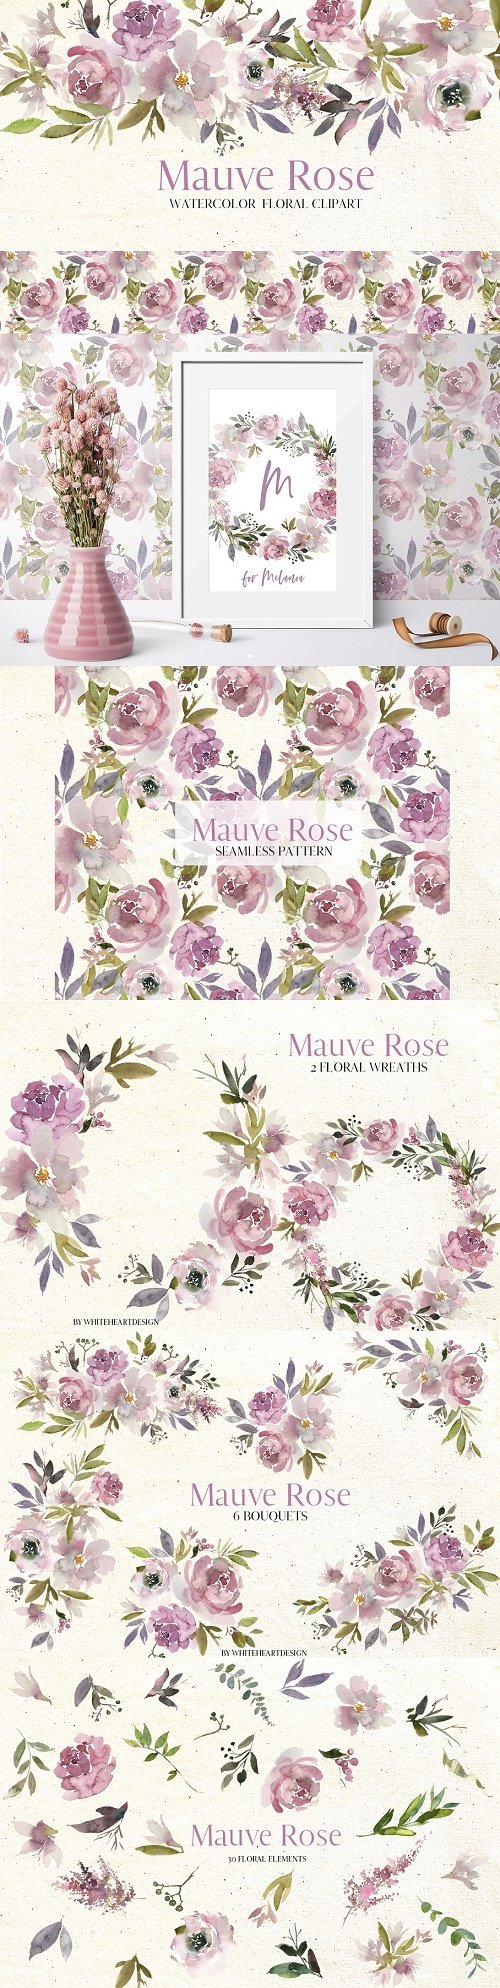 Mauve Rose Watercolor Floral Clipart 2997079